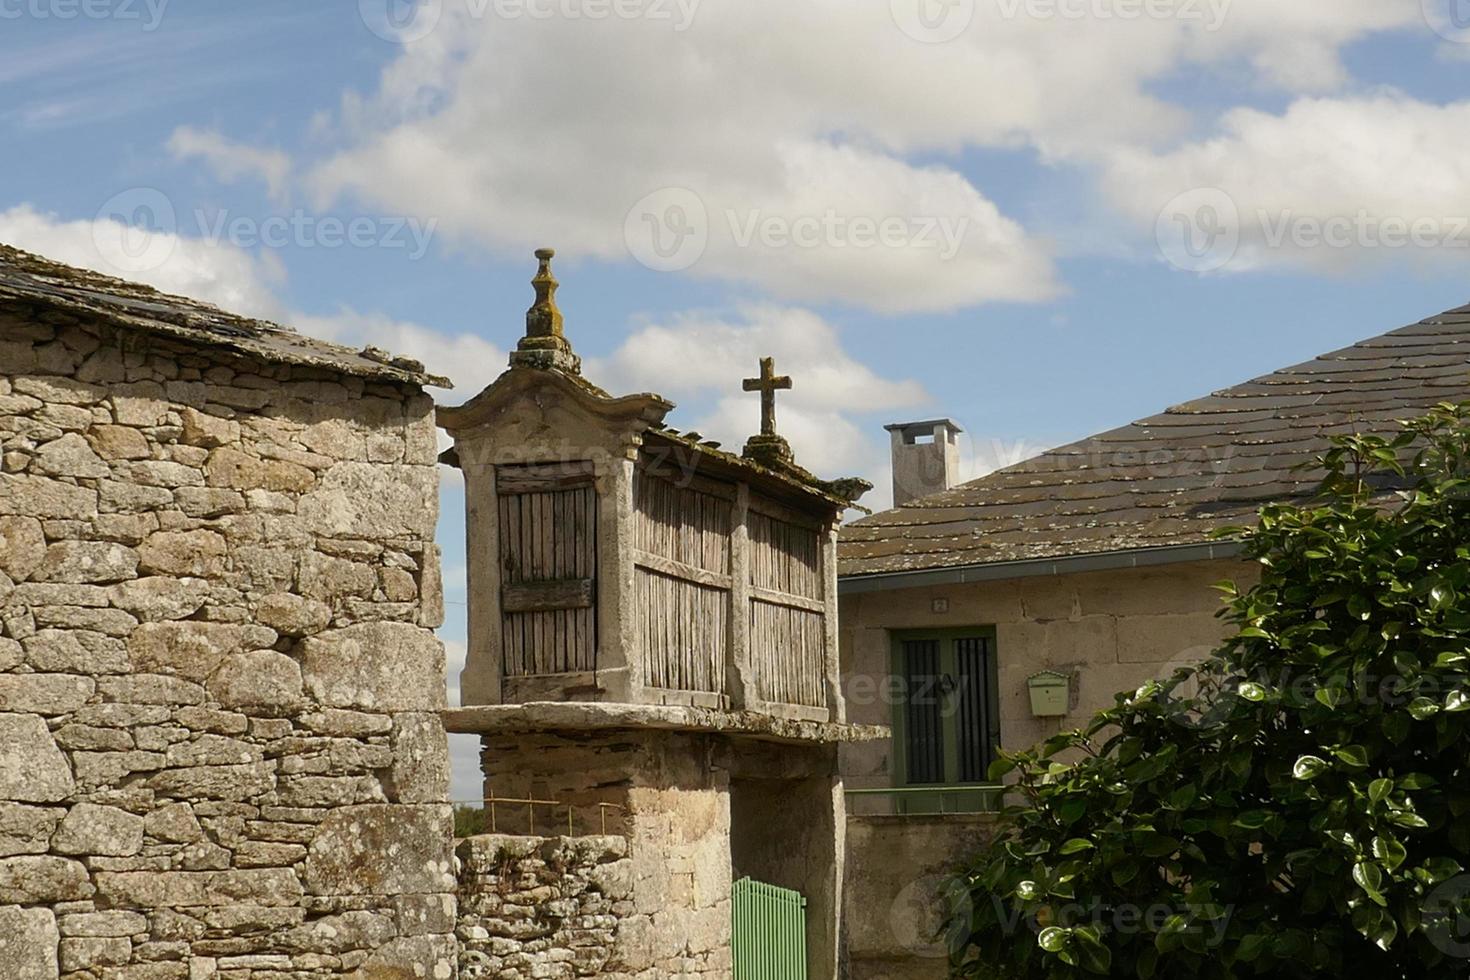 uitzichten en details van het platteland van Lugo foto